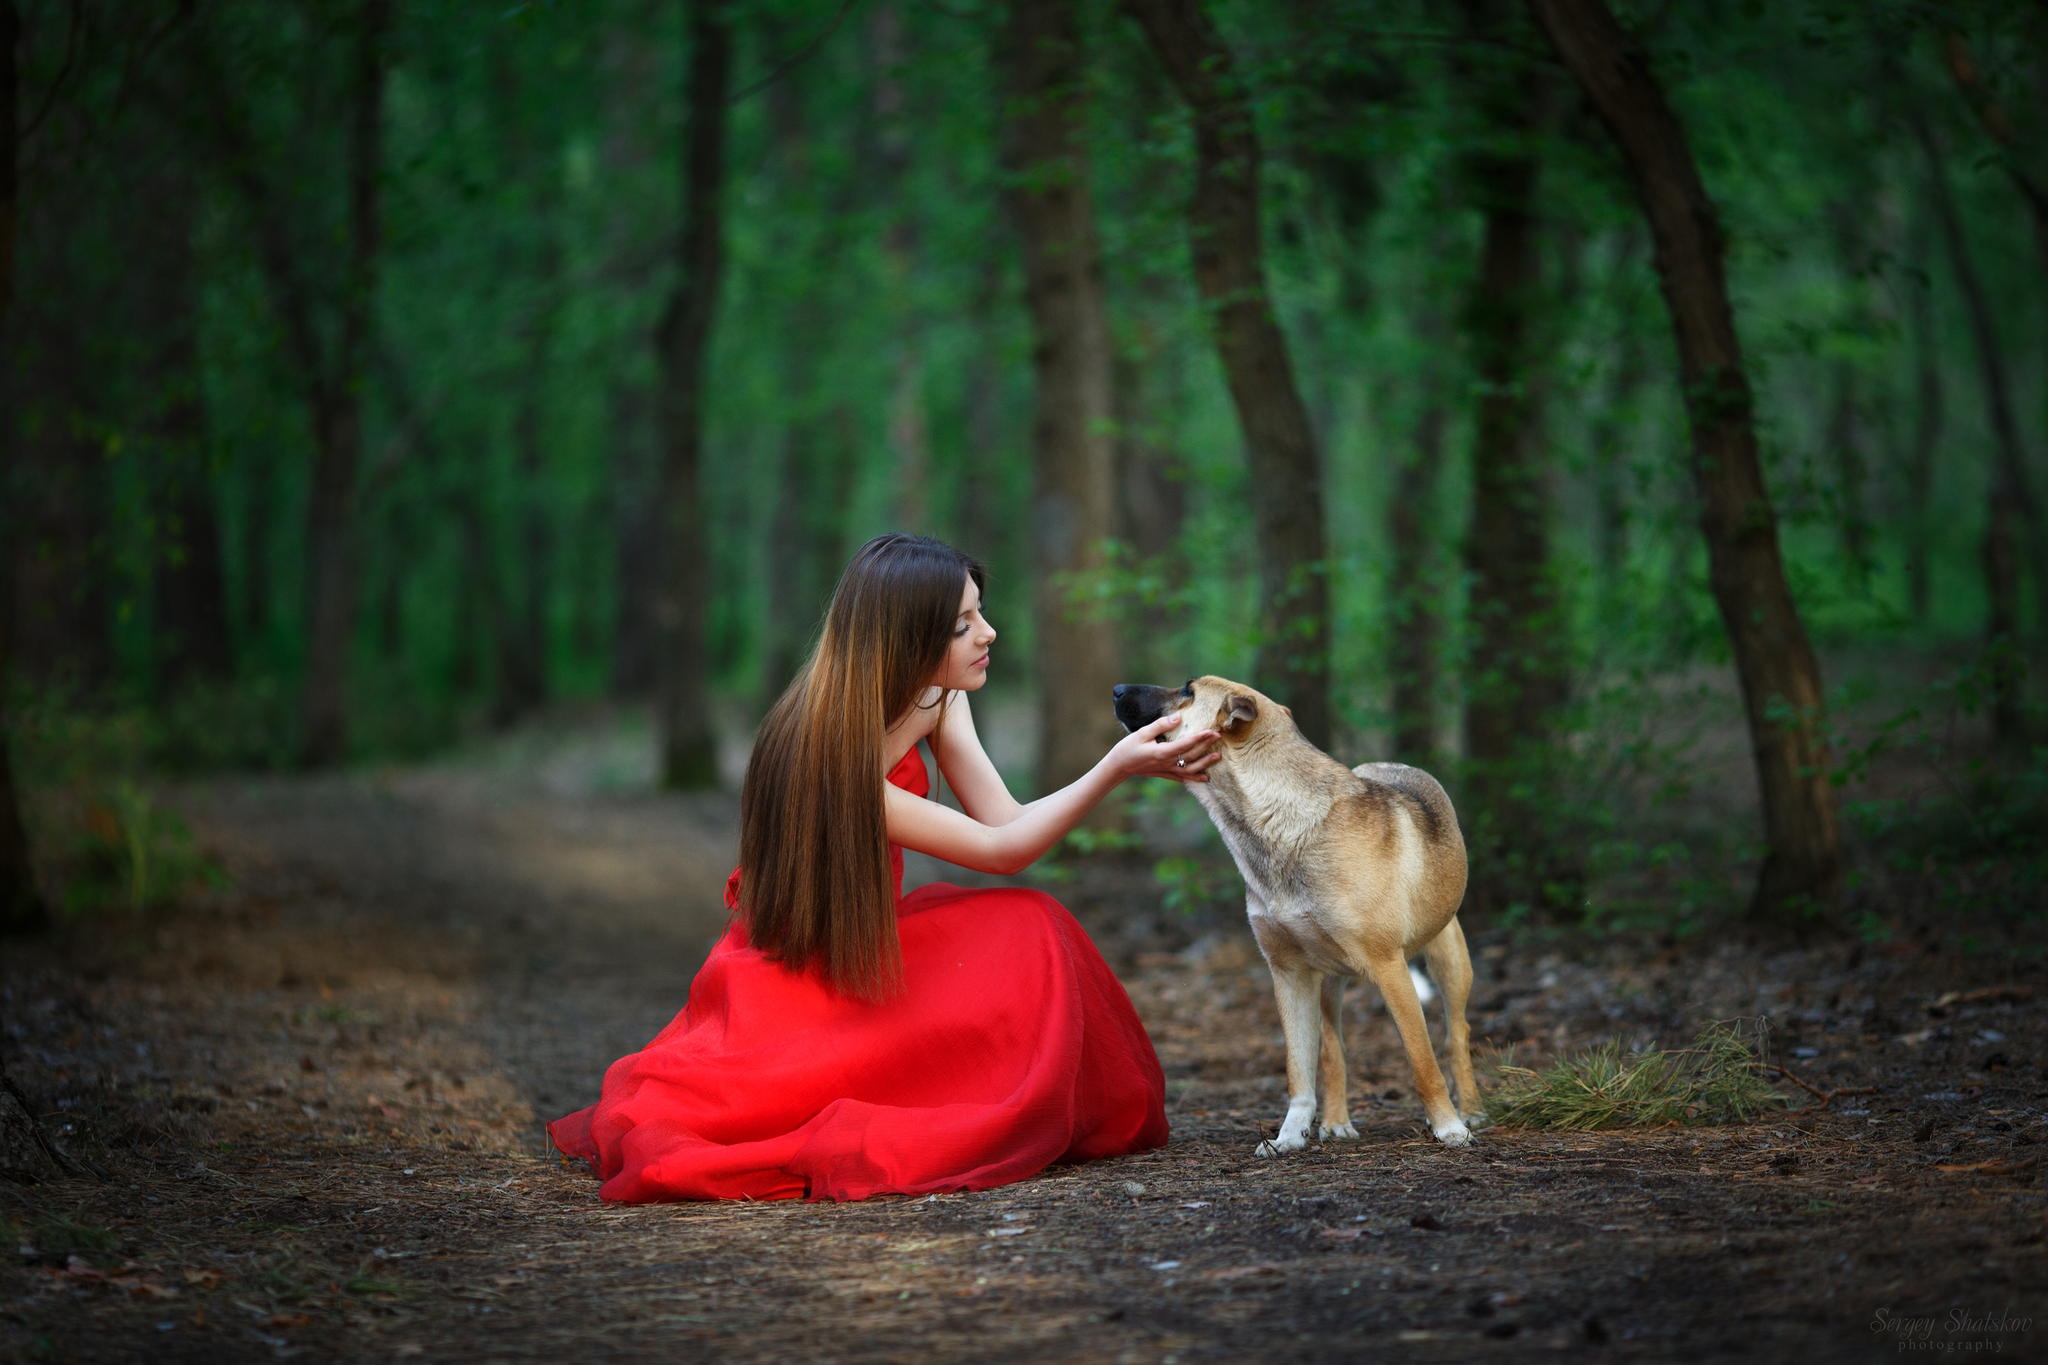 Картинка девушки с собакой. Фотосессия с собакой в лесу. Фотосессия с собакой в платье. Фотосессия в Красном платье в лесу. Девушка с собакой фотосессия.